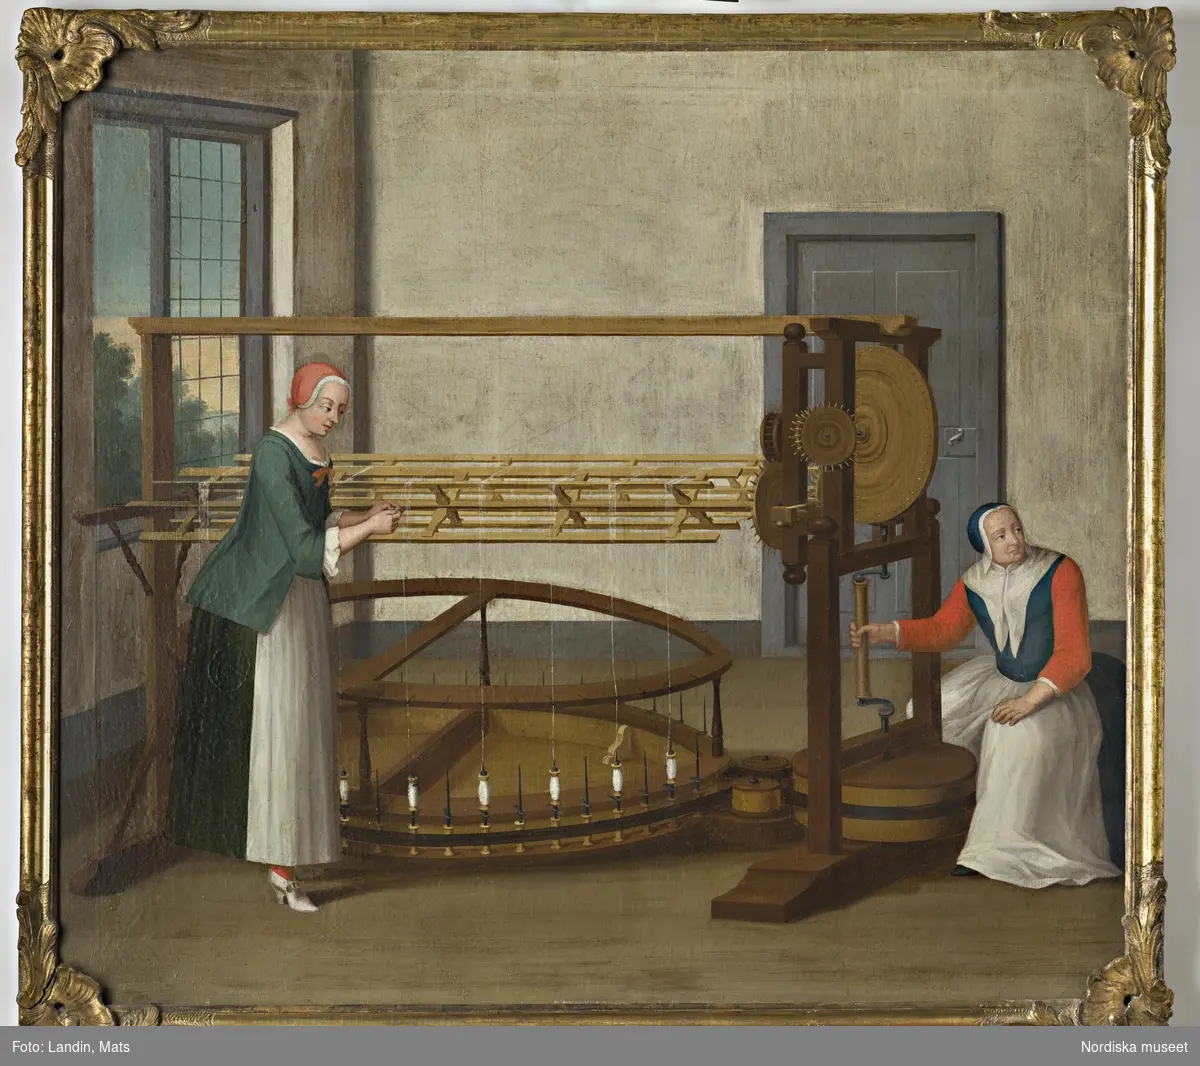 Oljemålning. Scener från ett silkespinneri under 1700-talet. Bobining. Två kvinnliga figurer. Har tillhört sidenfabrikör Rudolf Stenberg, Stockholm.